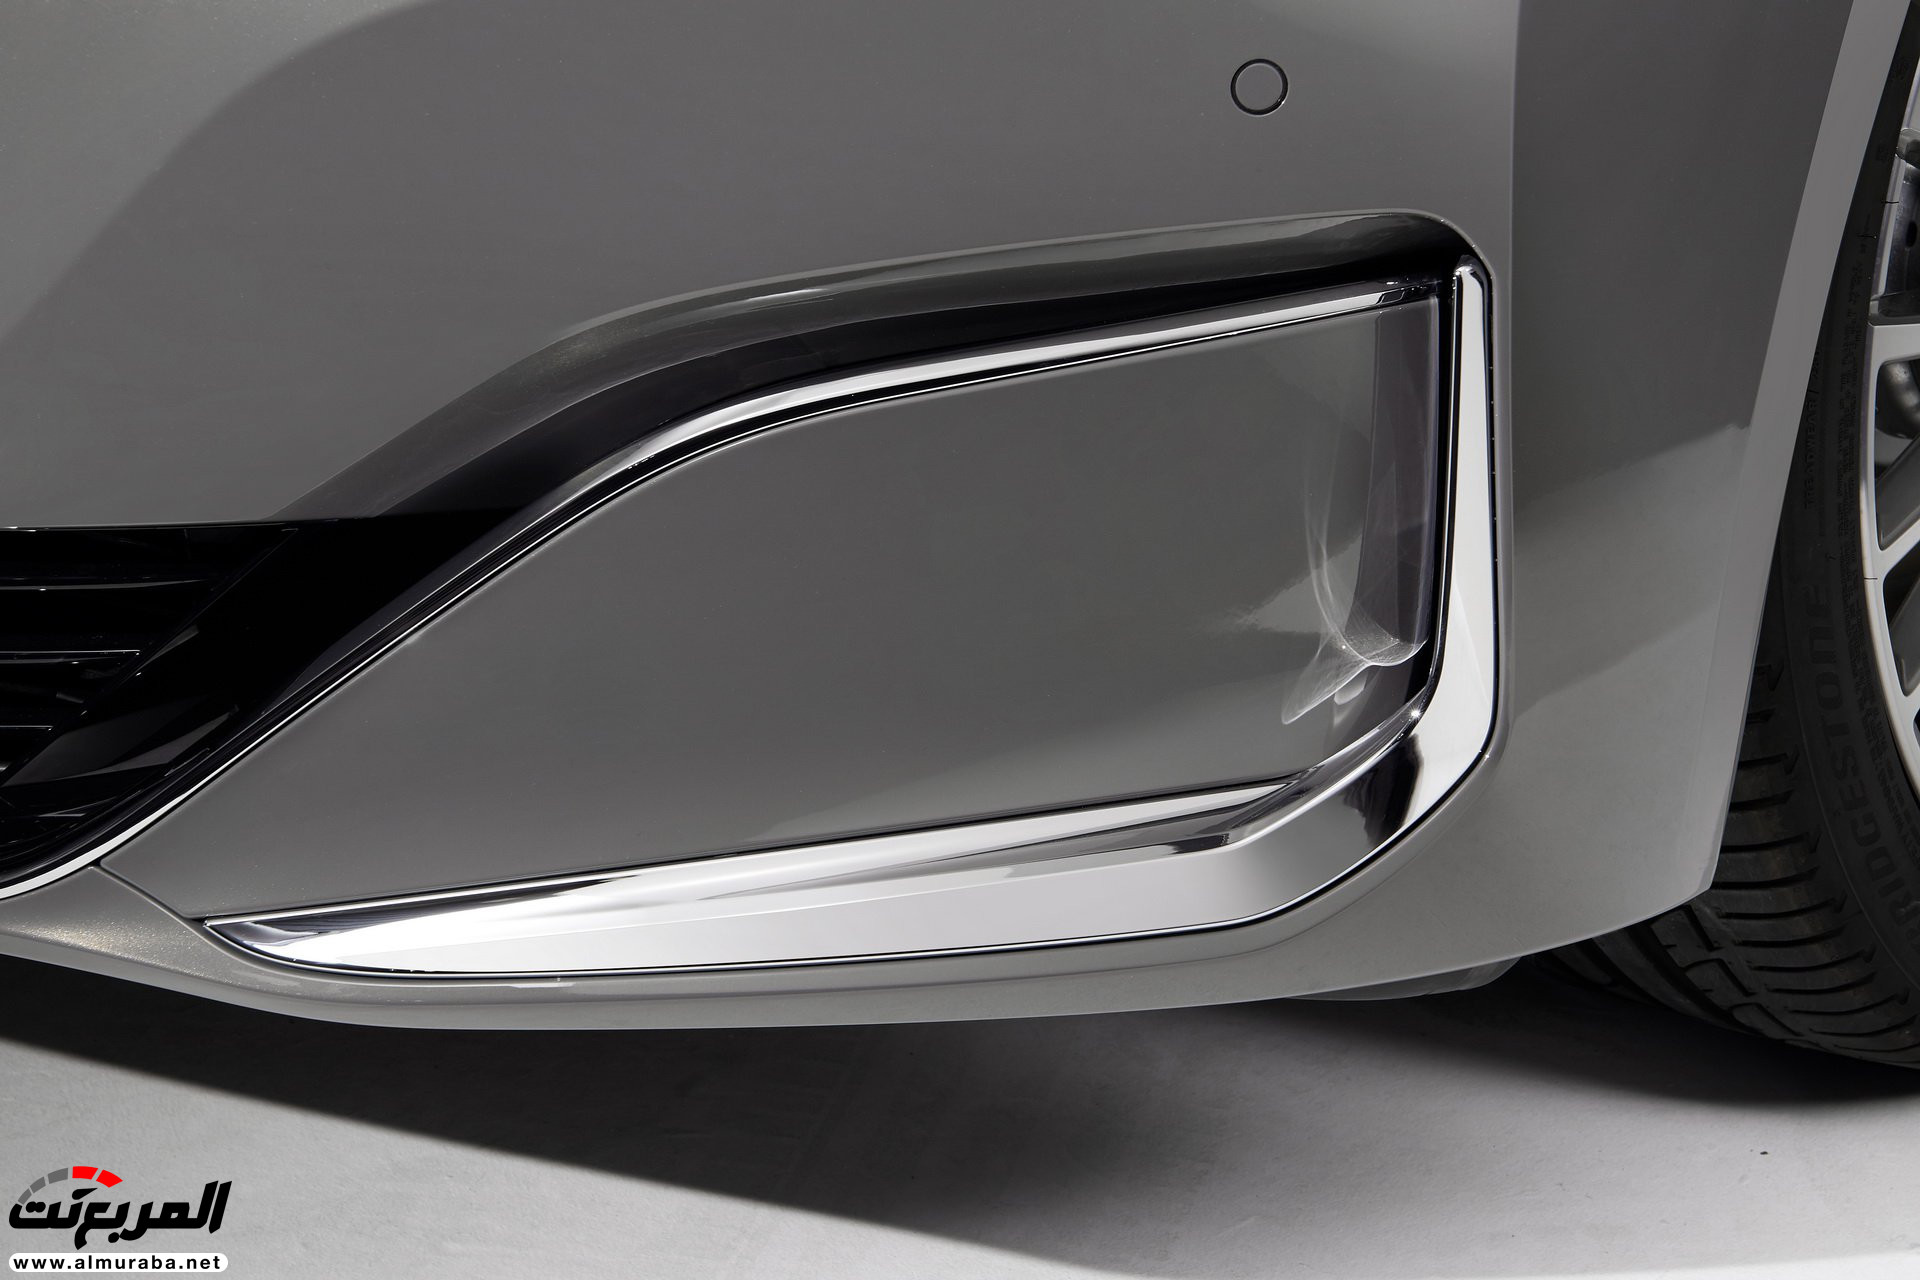 بي ام دبليو الفئة السابعة 2020 المحدثة تكشف نفسها رسمياً "صور ومواصفات" BMW 7 Series 293